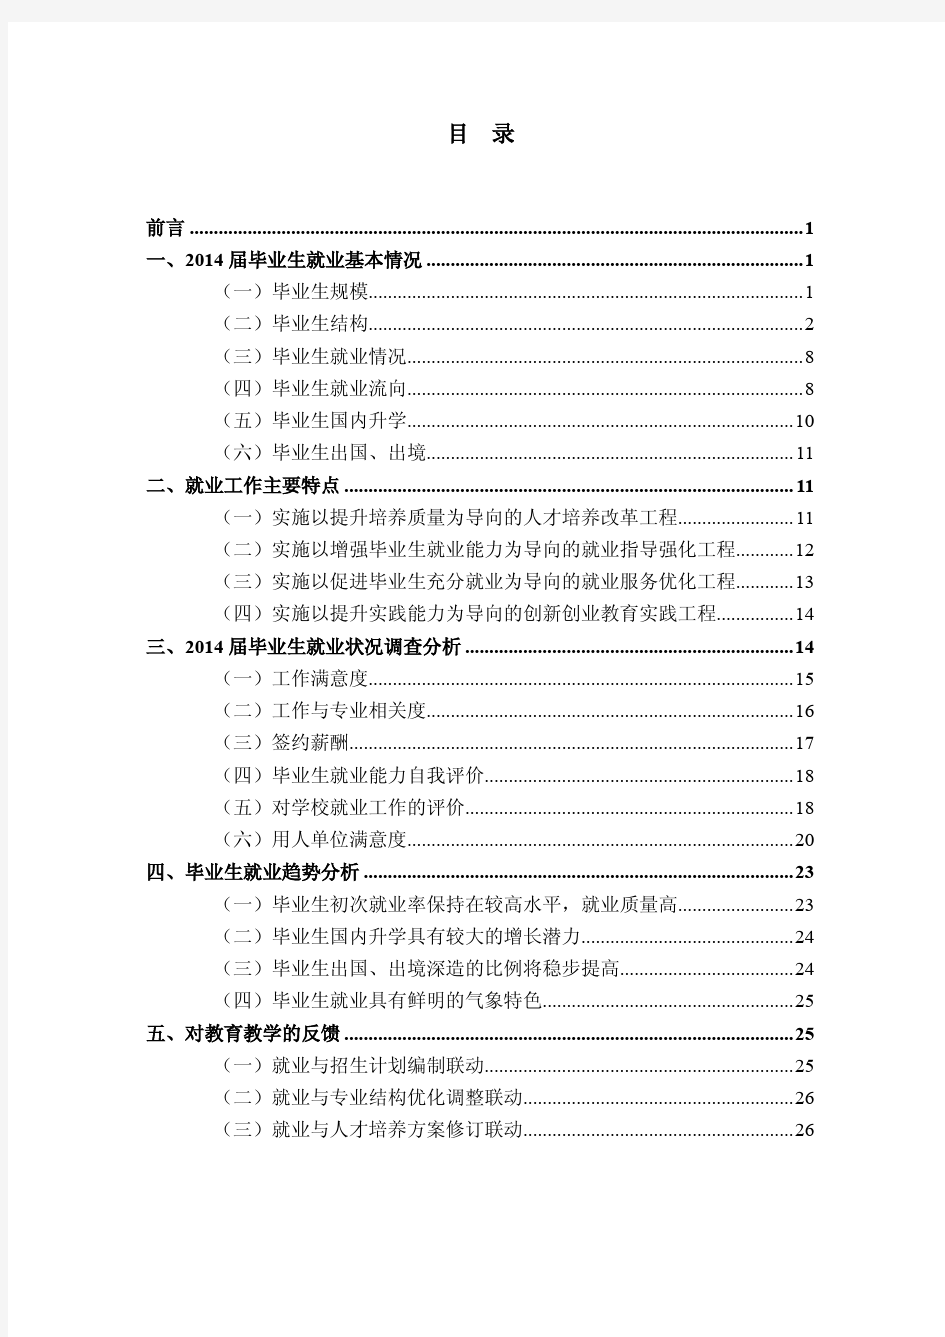 南京信息工程大学2014年毕业生就业质量报告